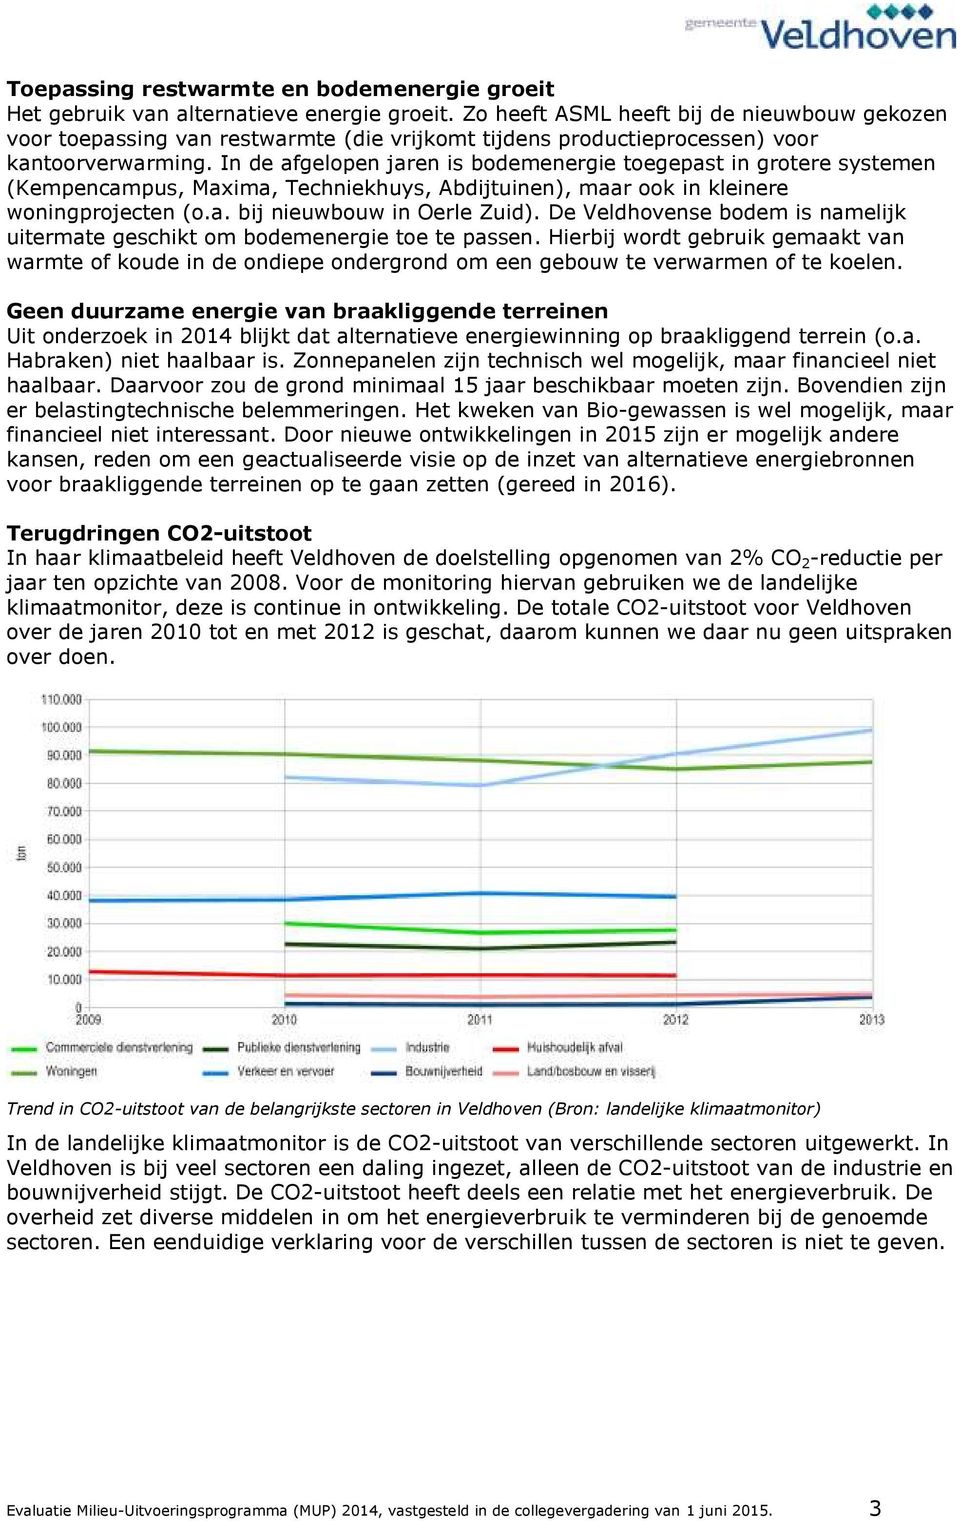 In de afgelopen jaren is bodemenergie toegepast in grotere systemen (Kempencampus, Maxima, Techniekhuys, Abdijtuinen), maar ook in kleinere woningprojecten (o.a. bij nieuwbouw in Oerle Zuid).